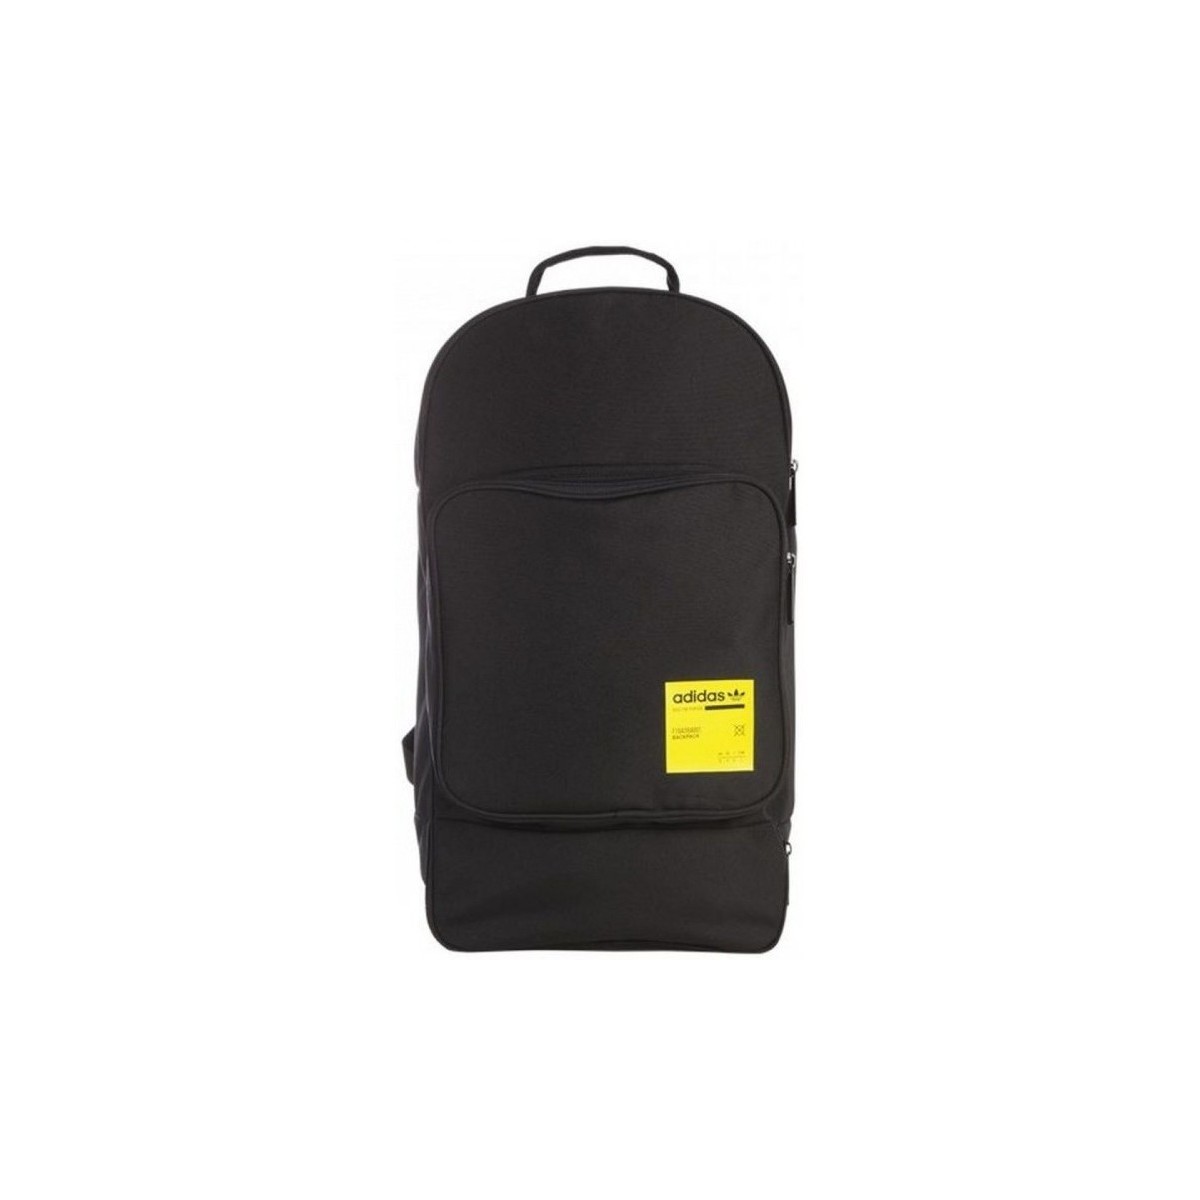 adidas Originals Noir Kaval Backpack i176T0XD